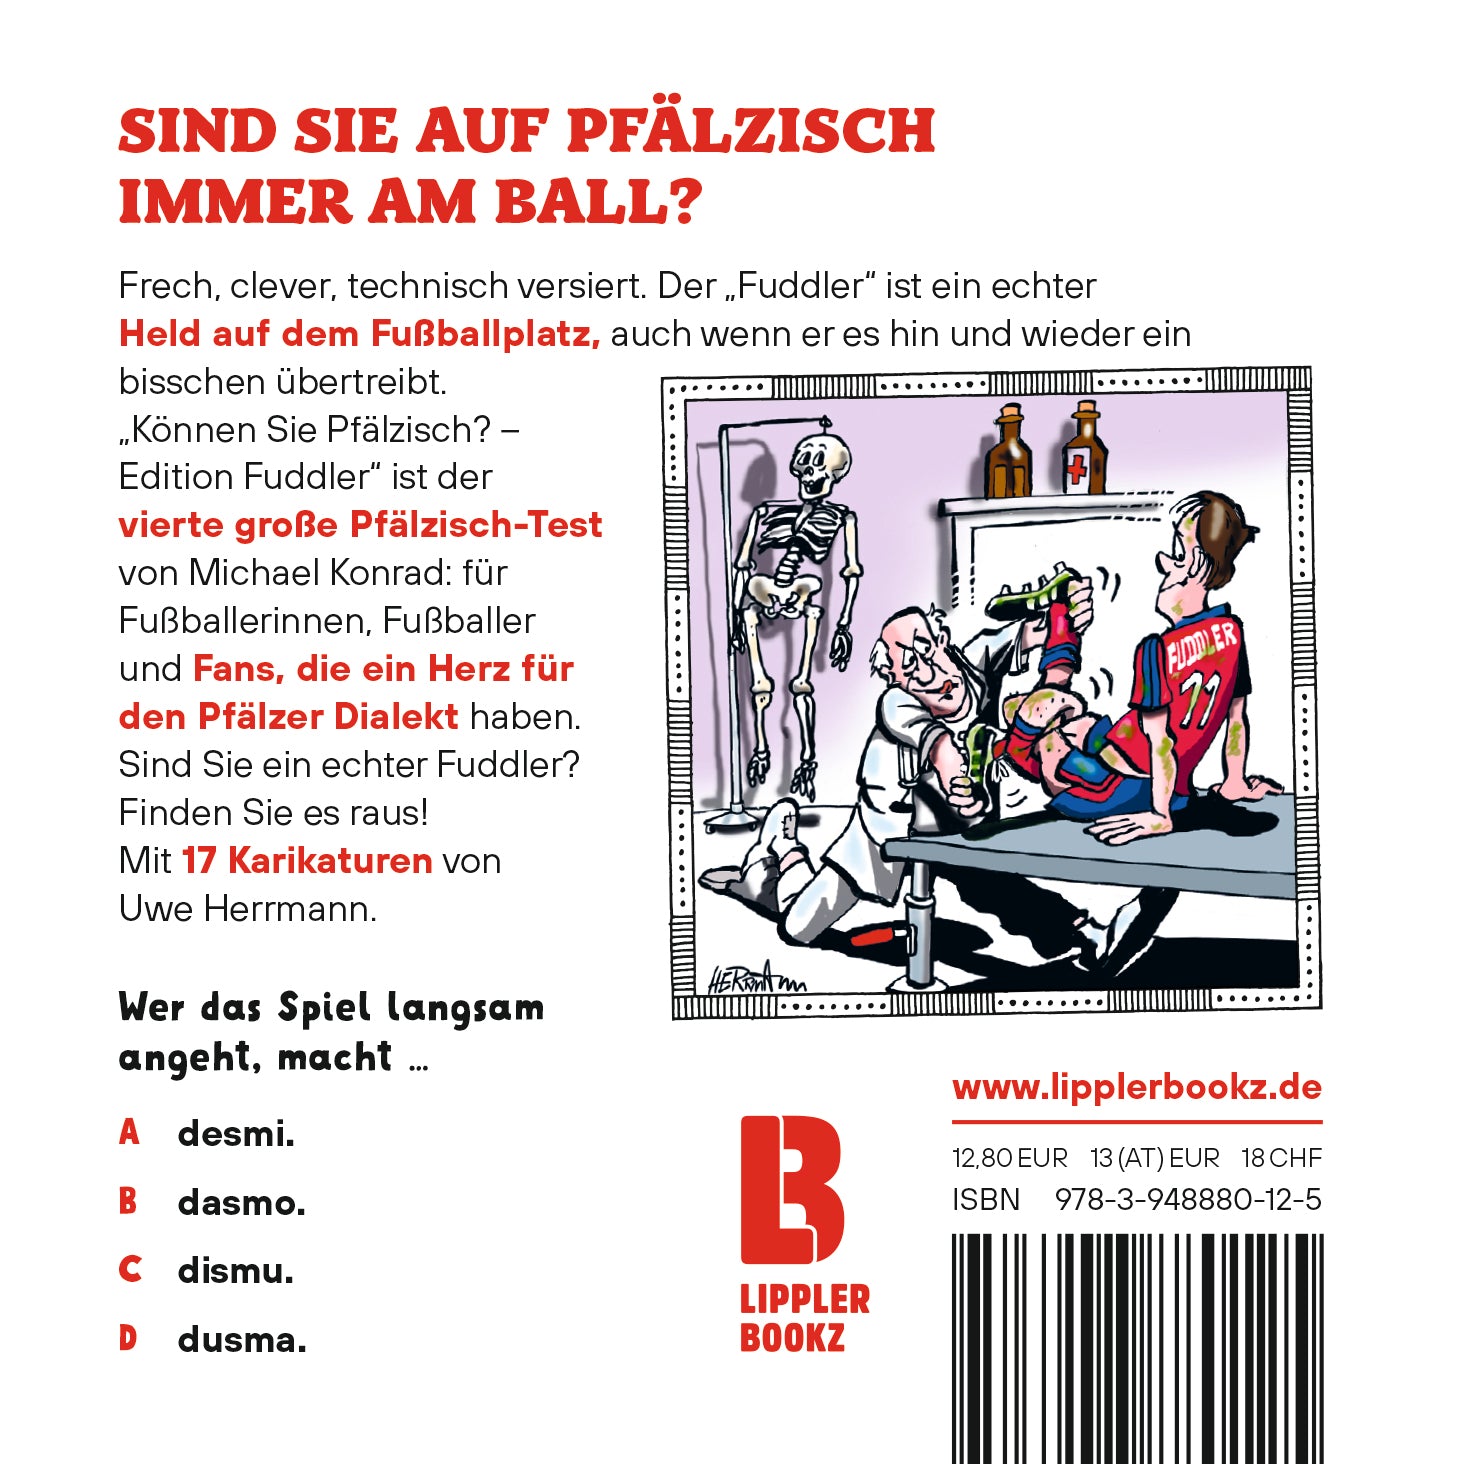 Pfalz-Buch: "Können Sie Pfälzisch" (Edition Fuddler) - Pfälzer Freiheit